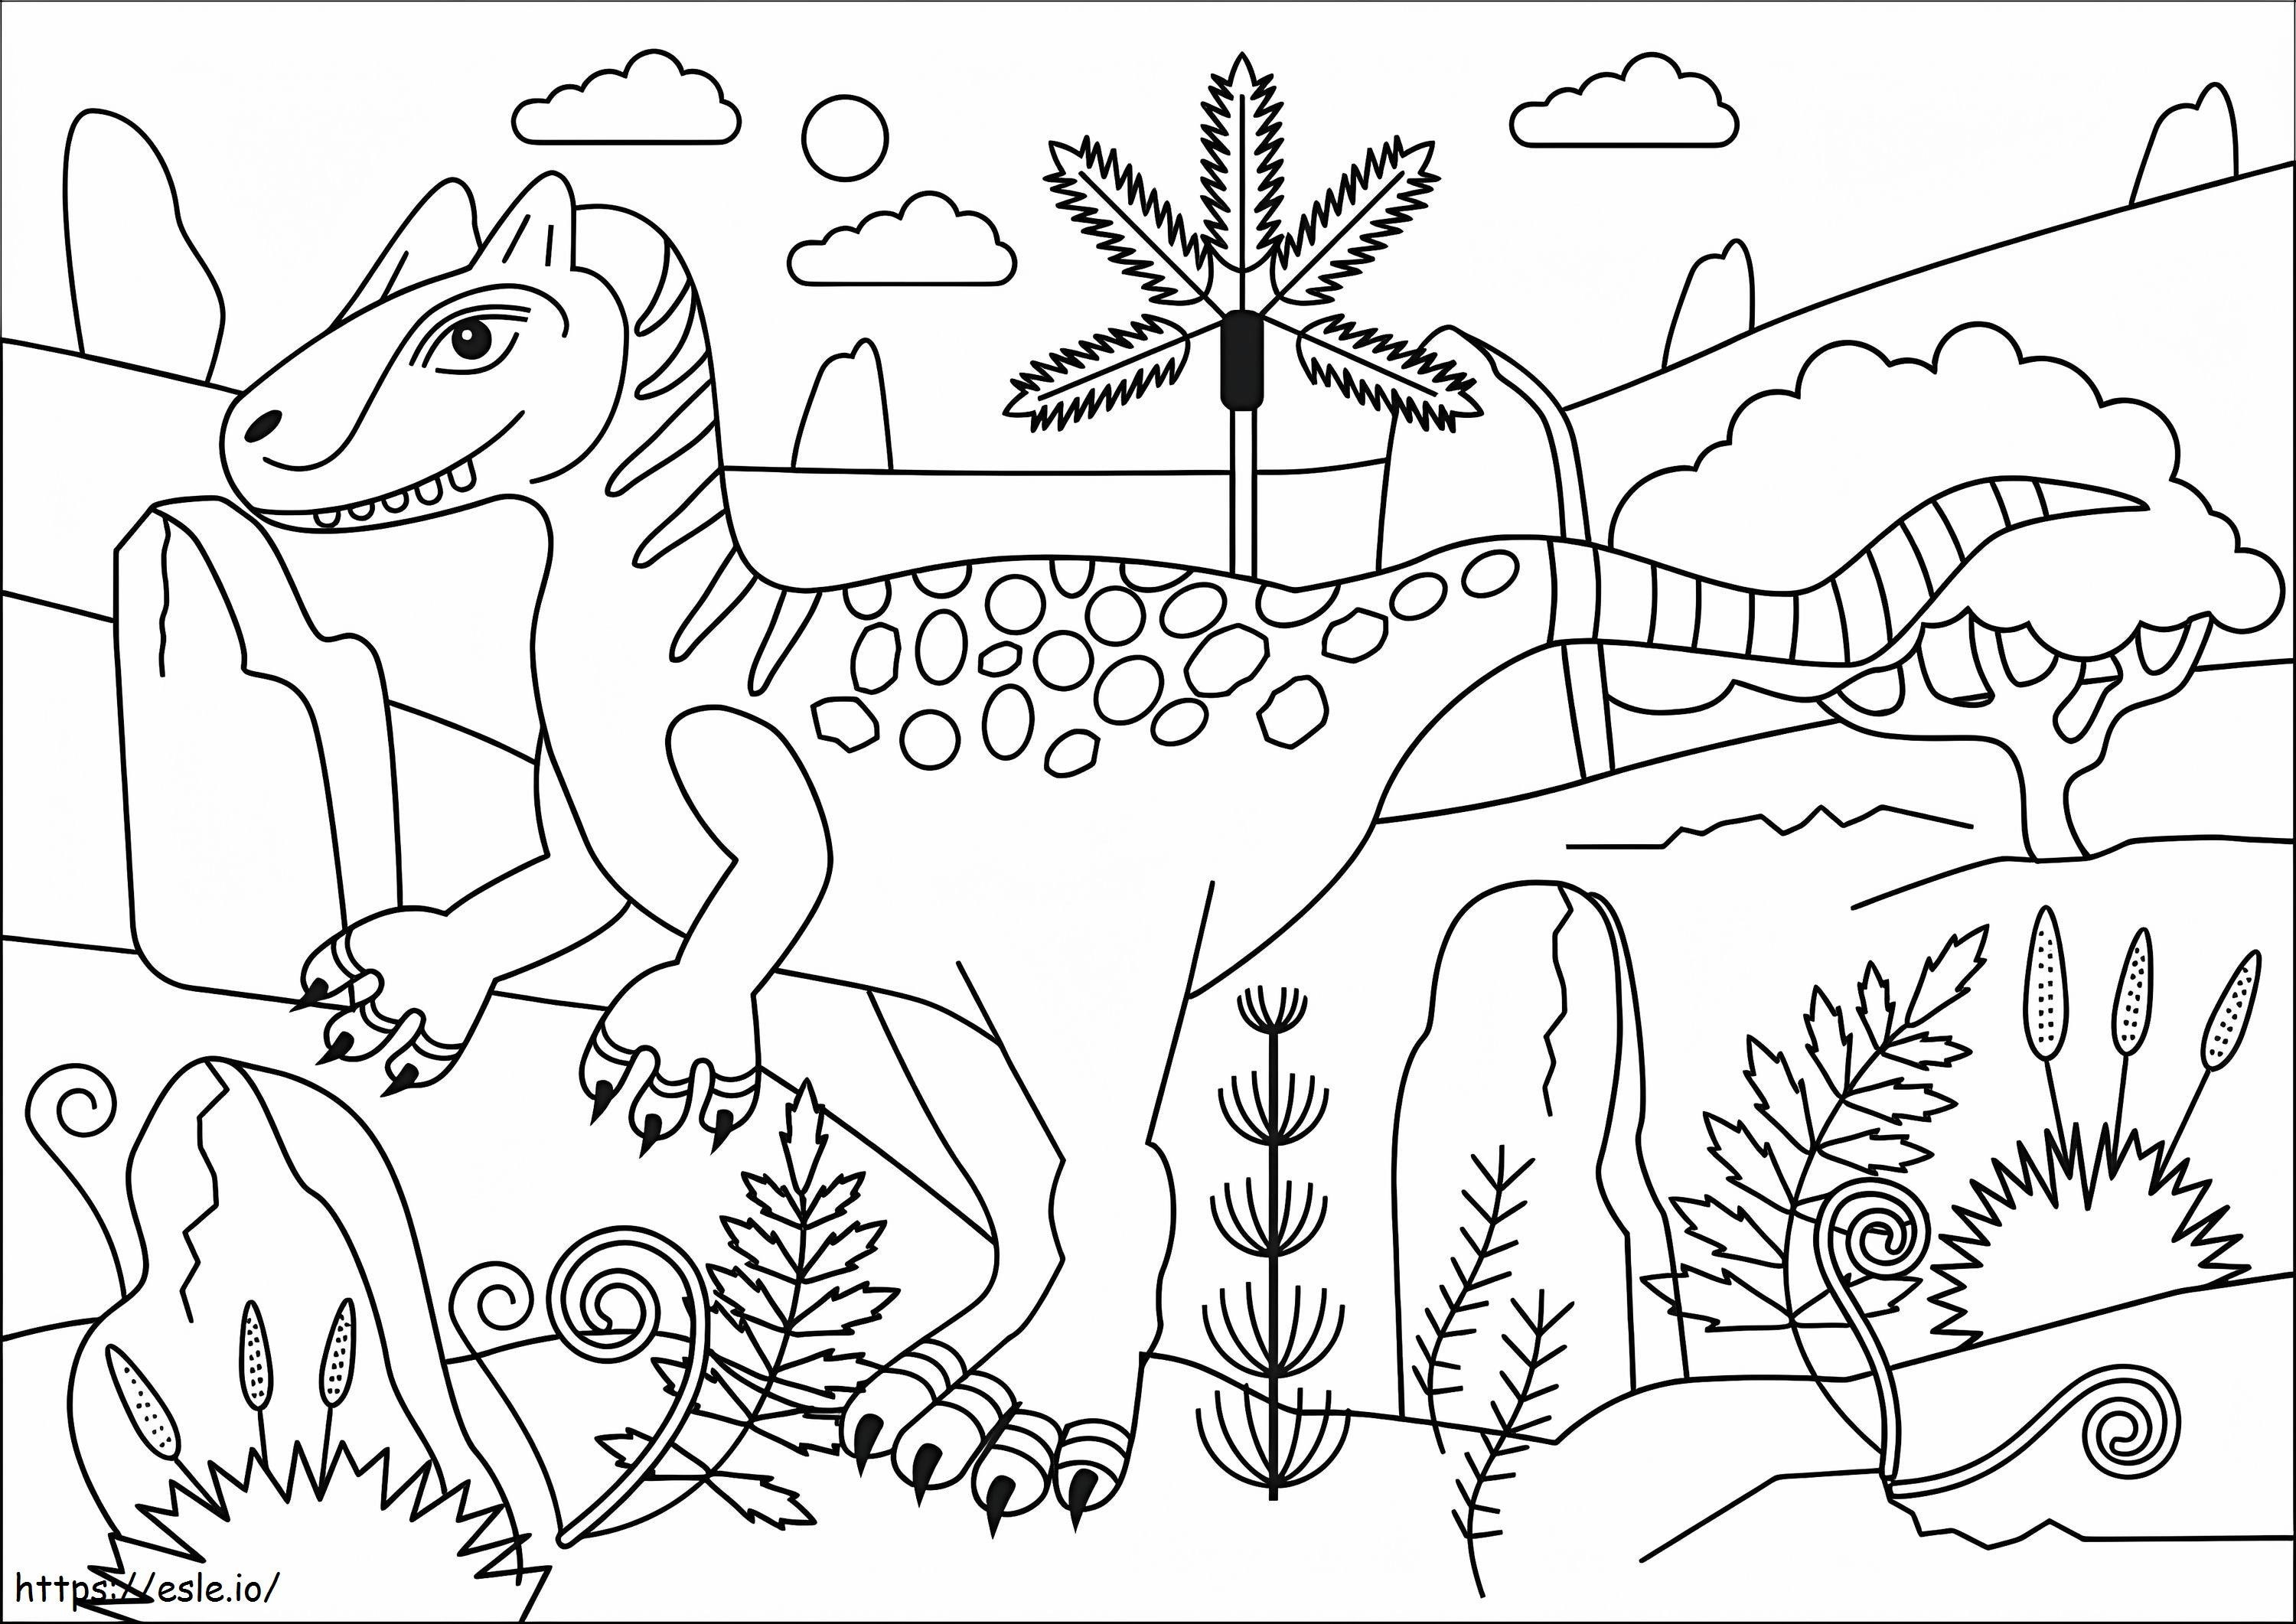 Allosaurus Dinozor boyama